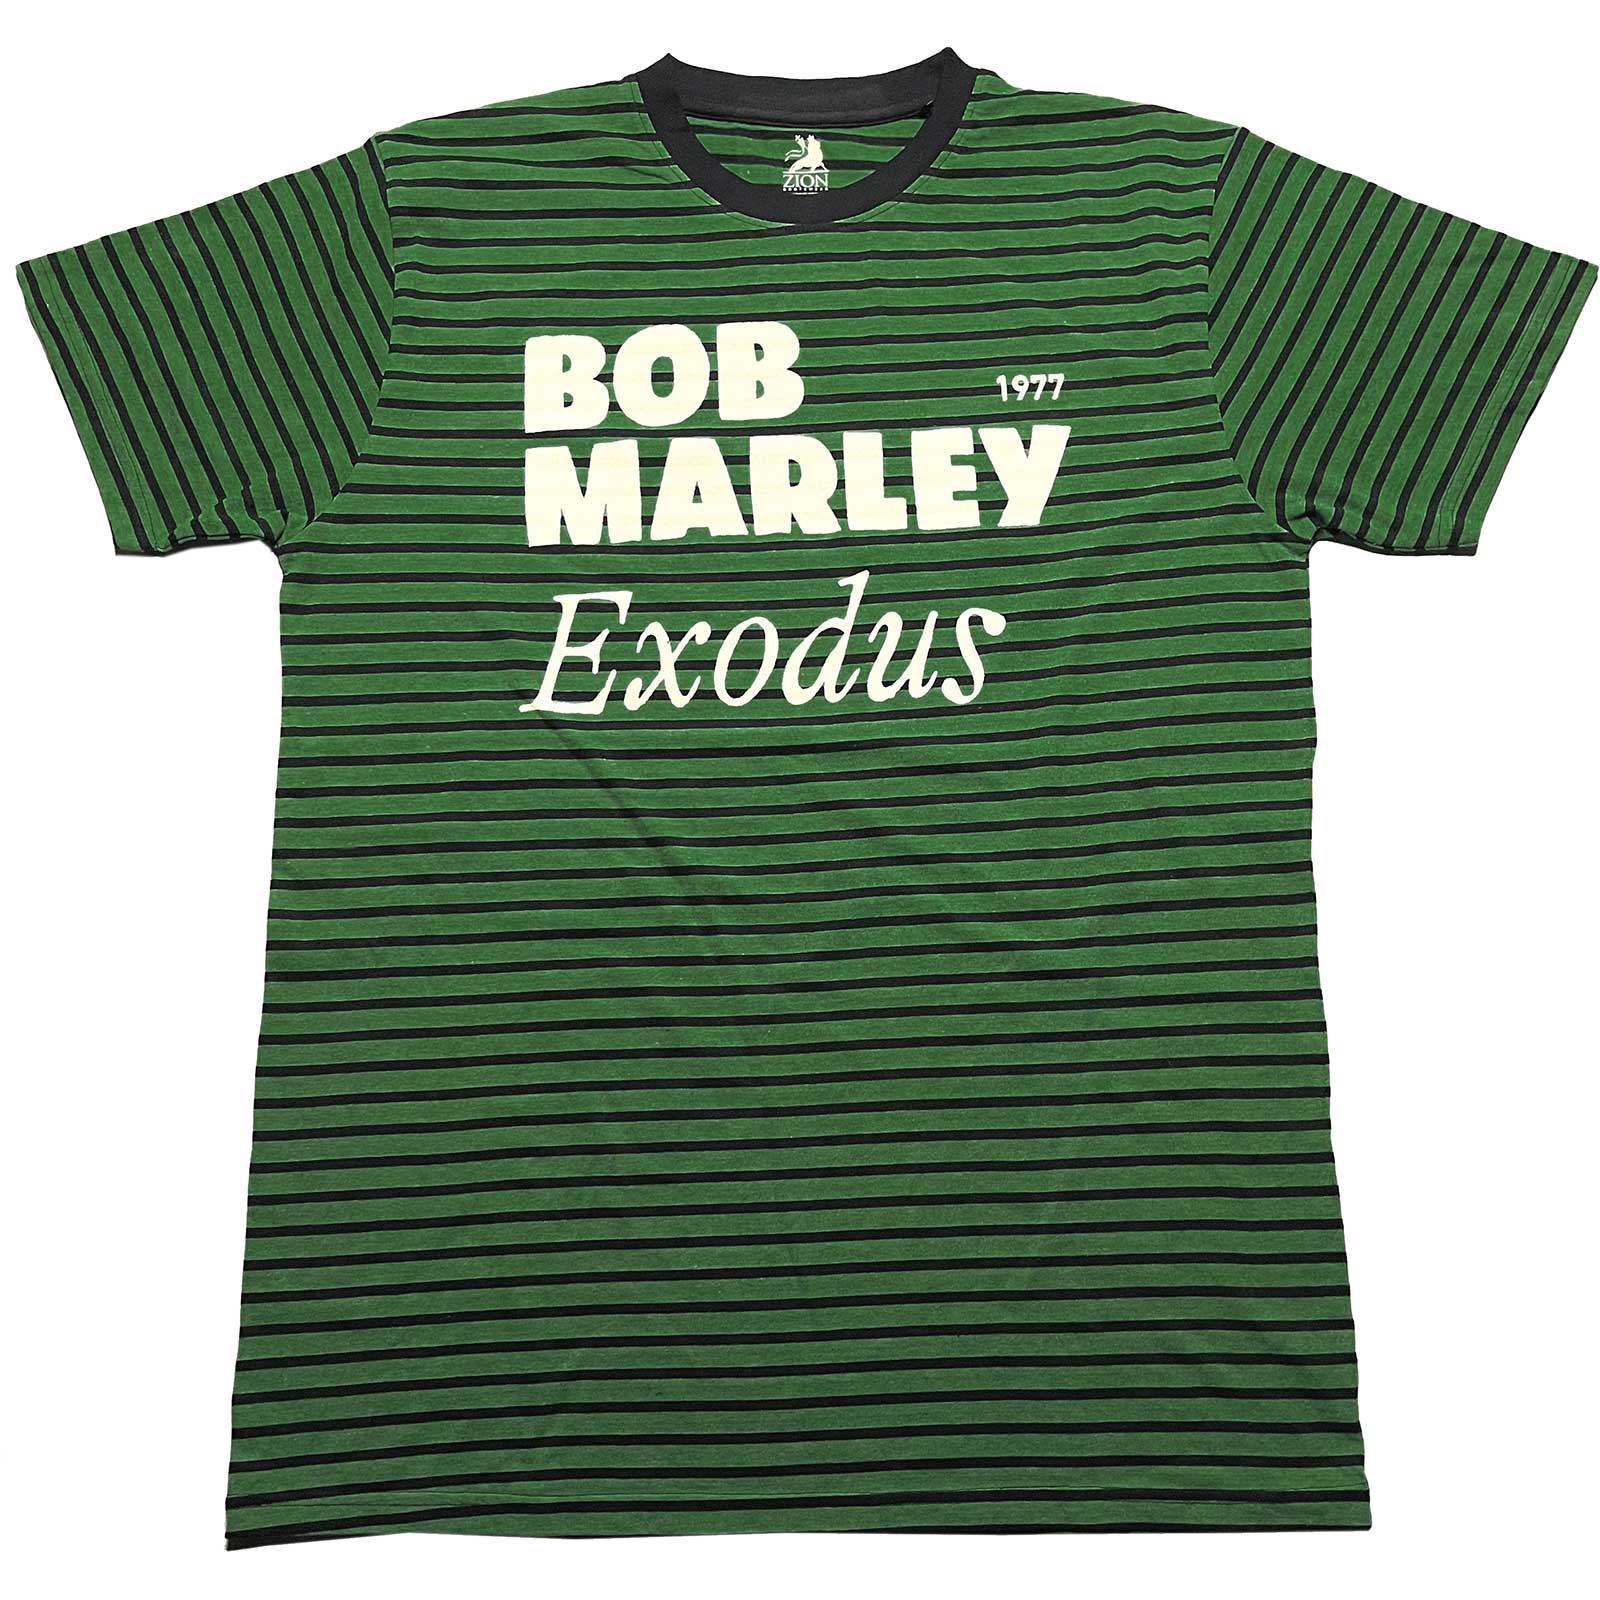 BOB MARLEY Exodus